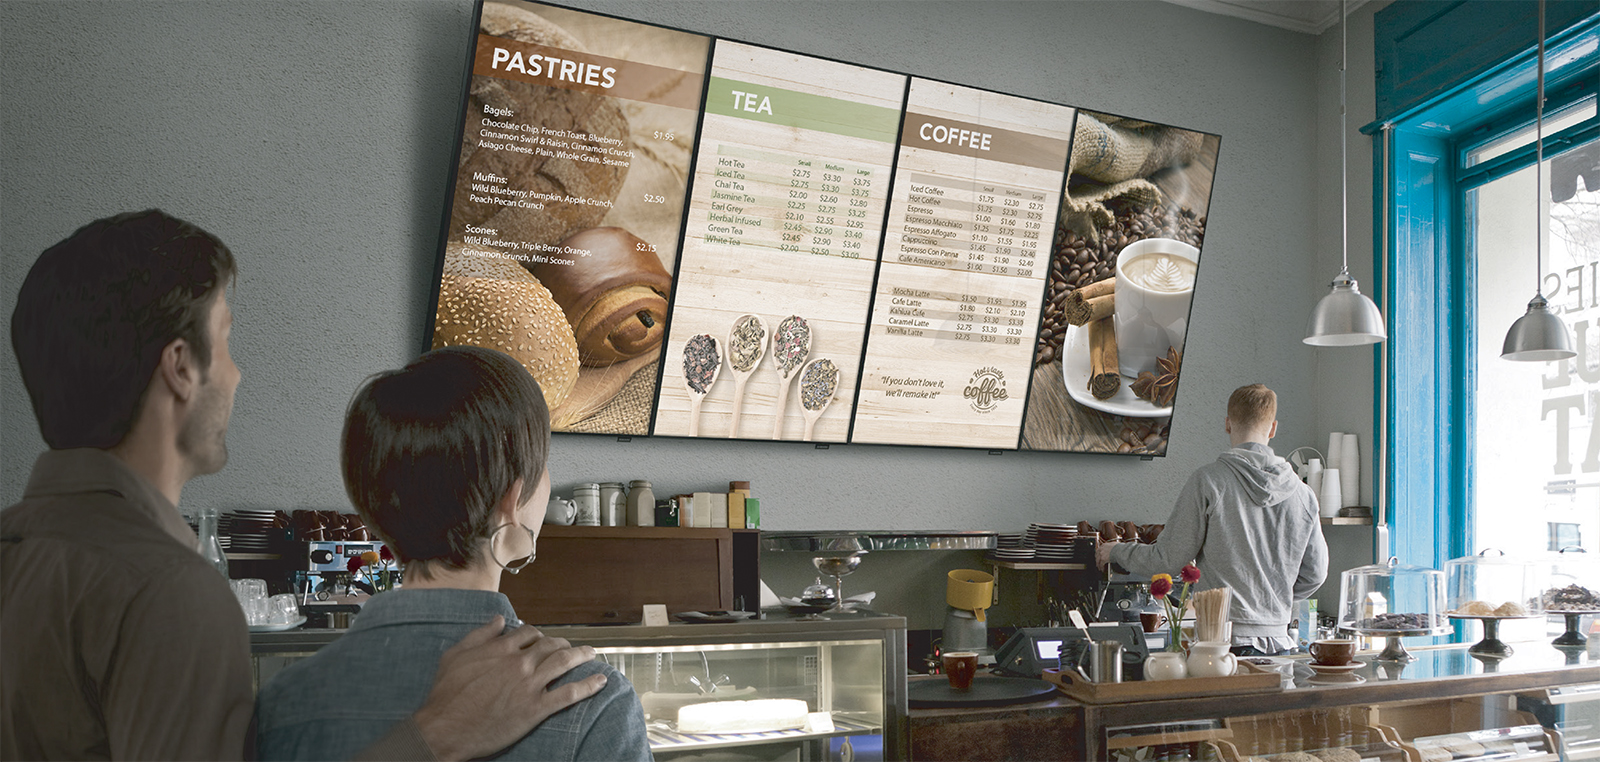 màn hình led quảng cáo kỹ thuật số cho chuỗi cafe